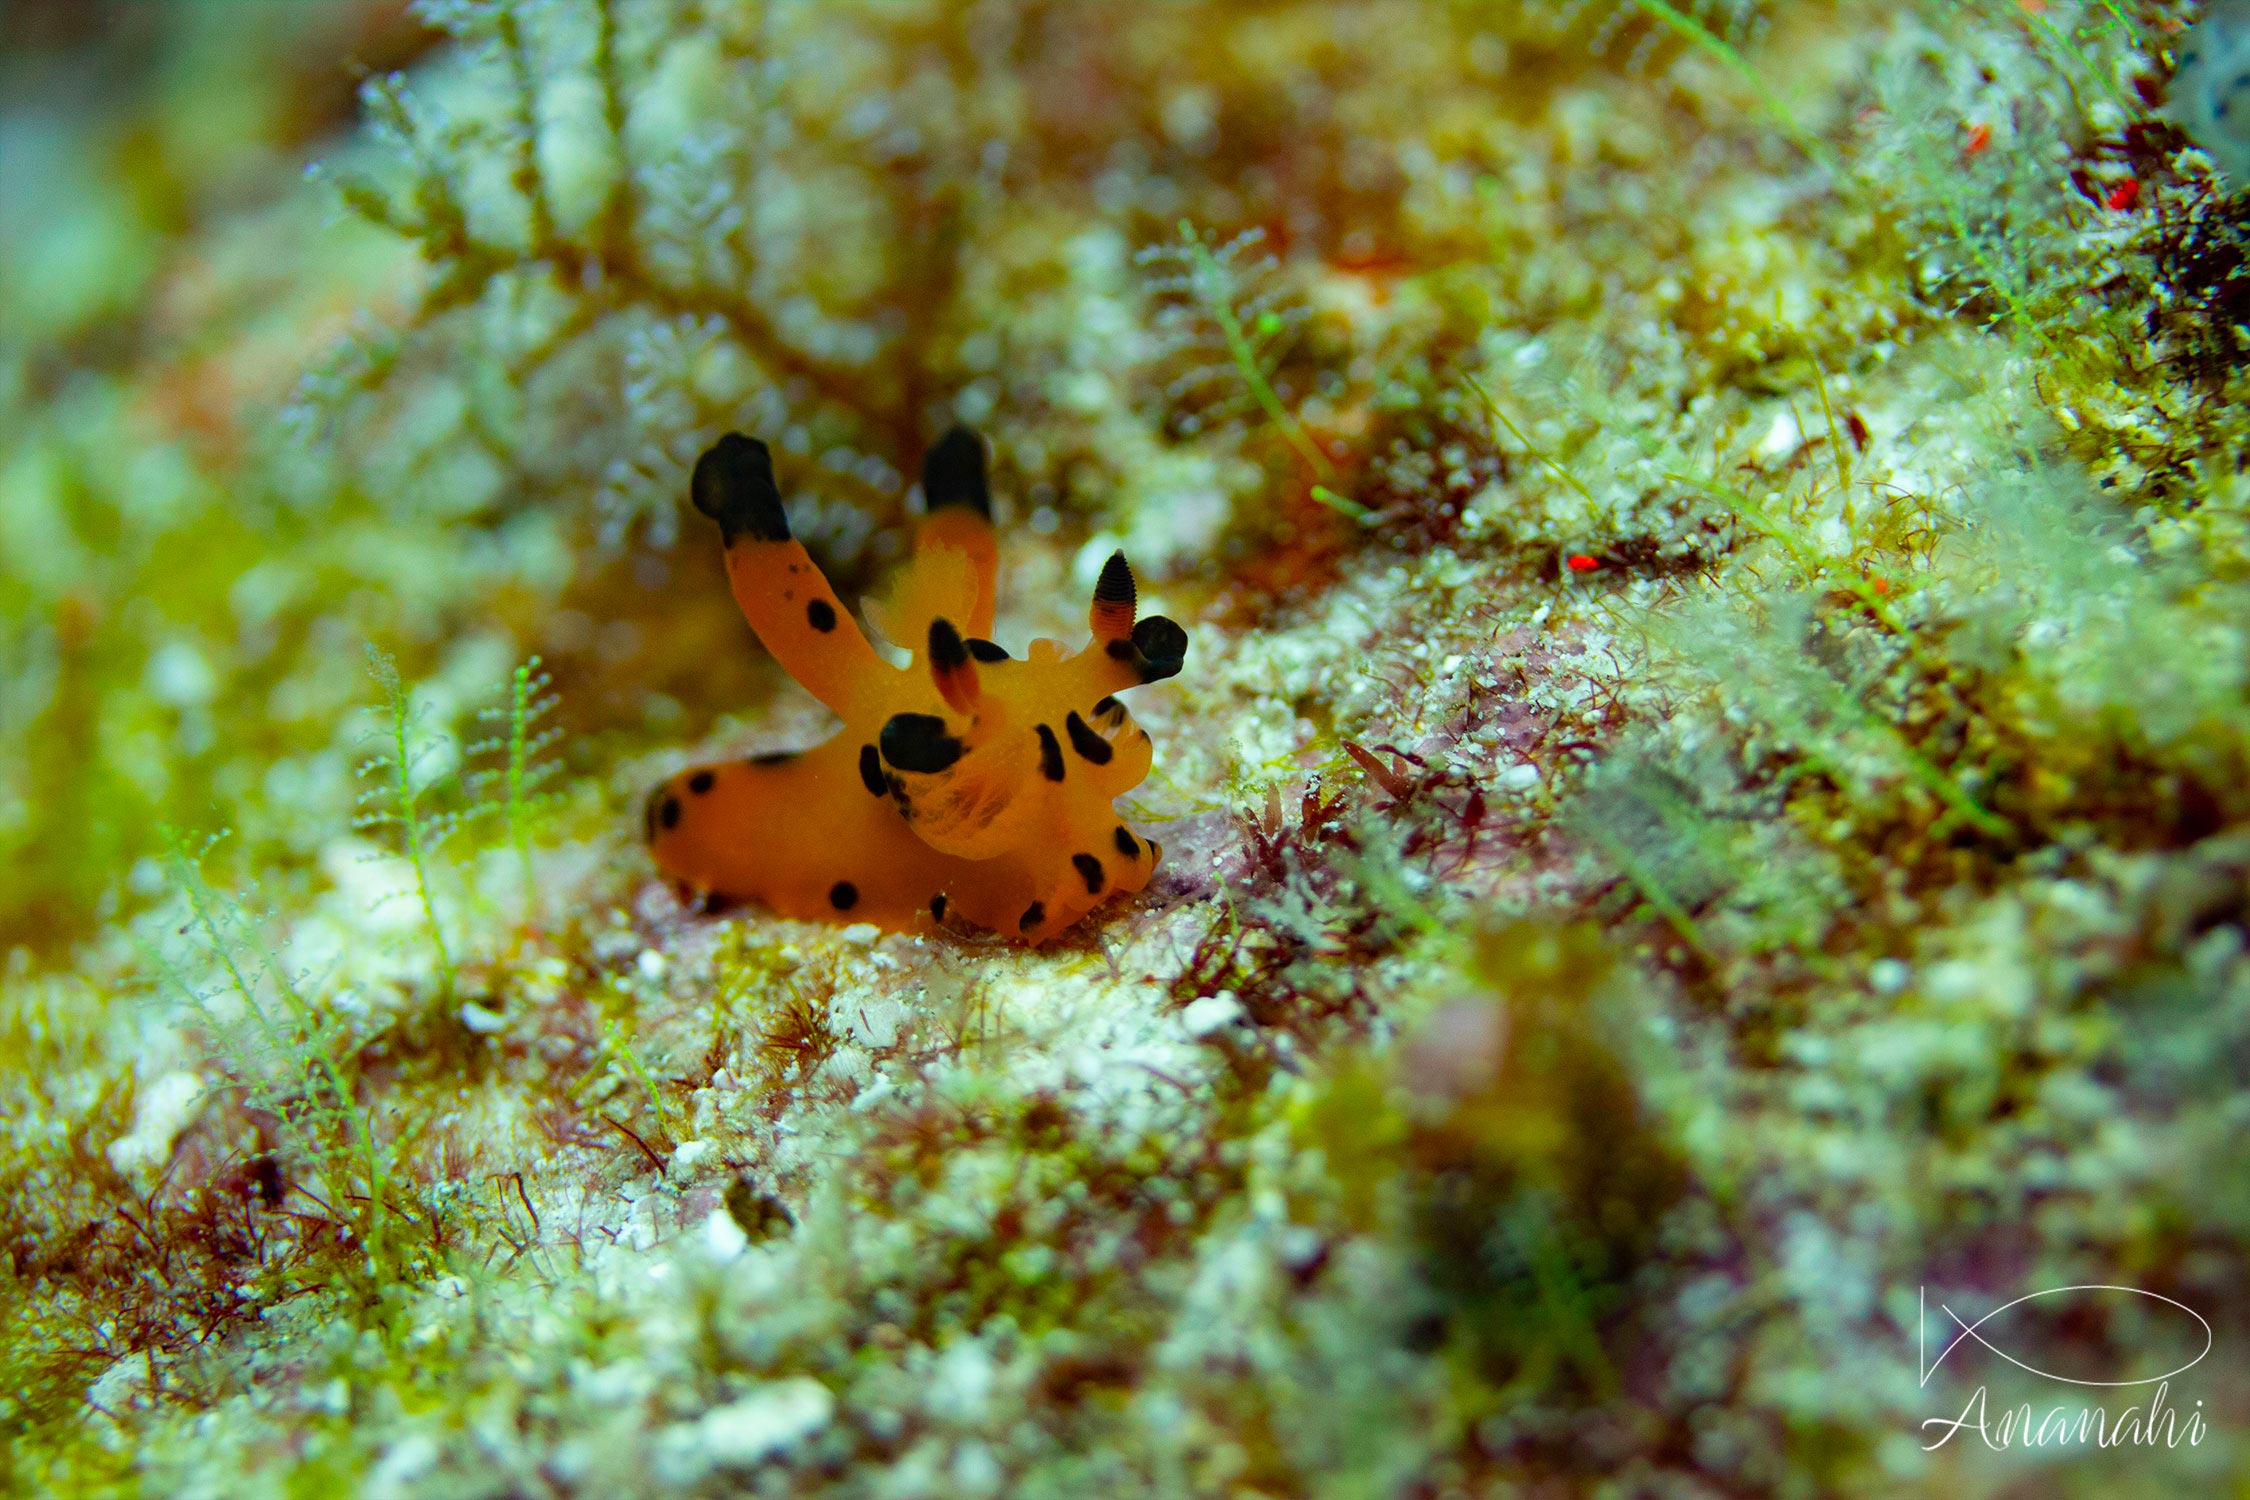 Pikachu nudibranch of Raja Ampat